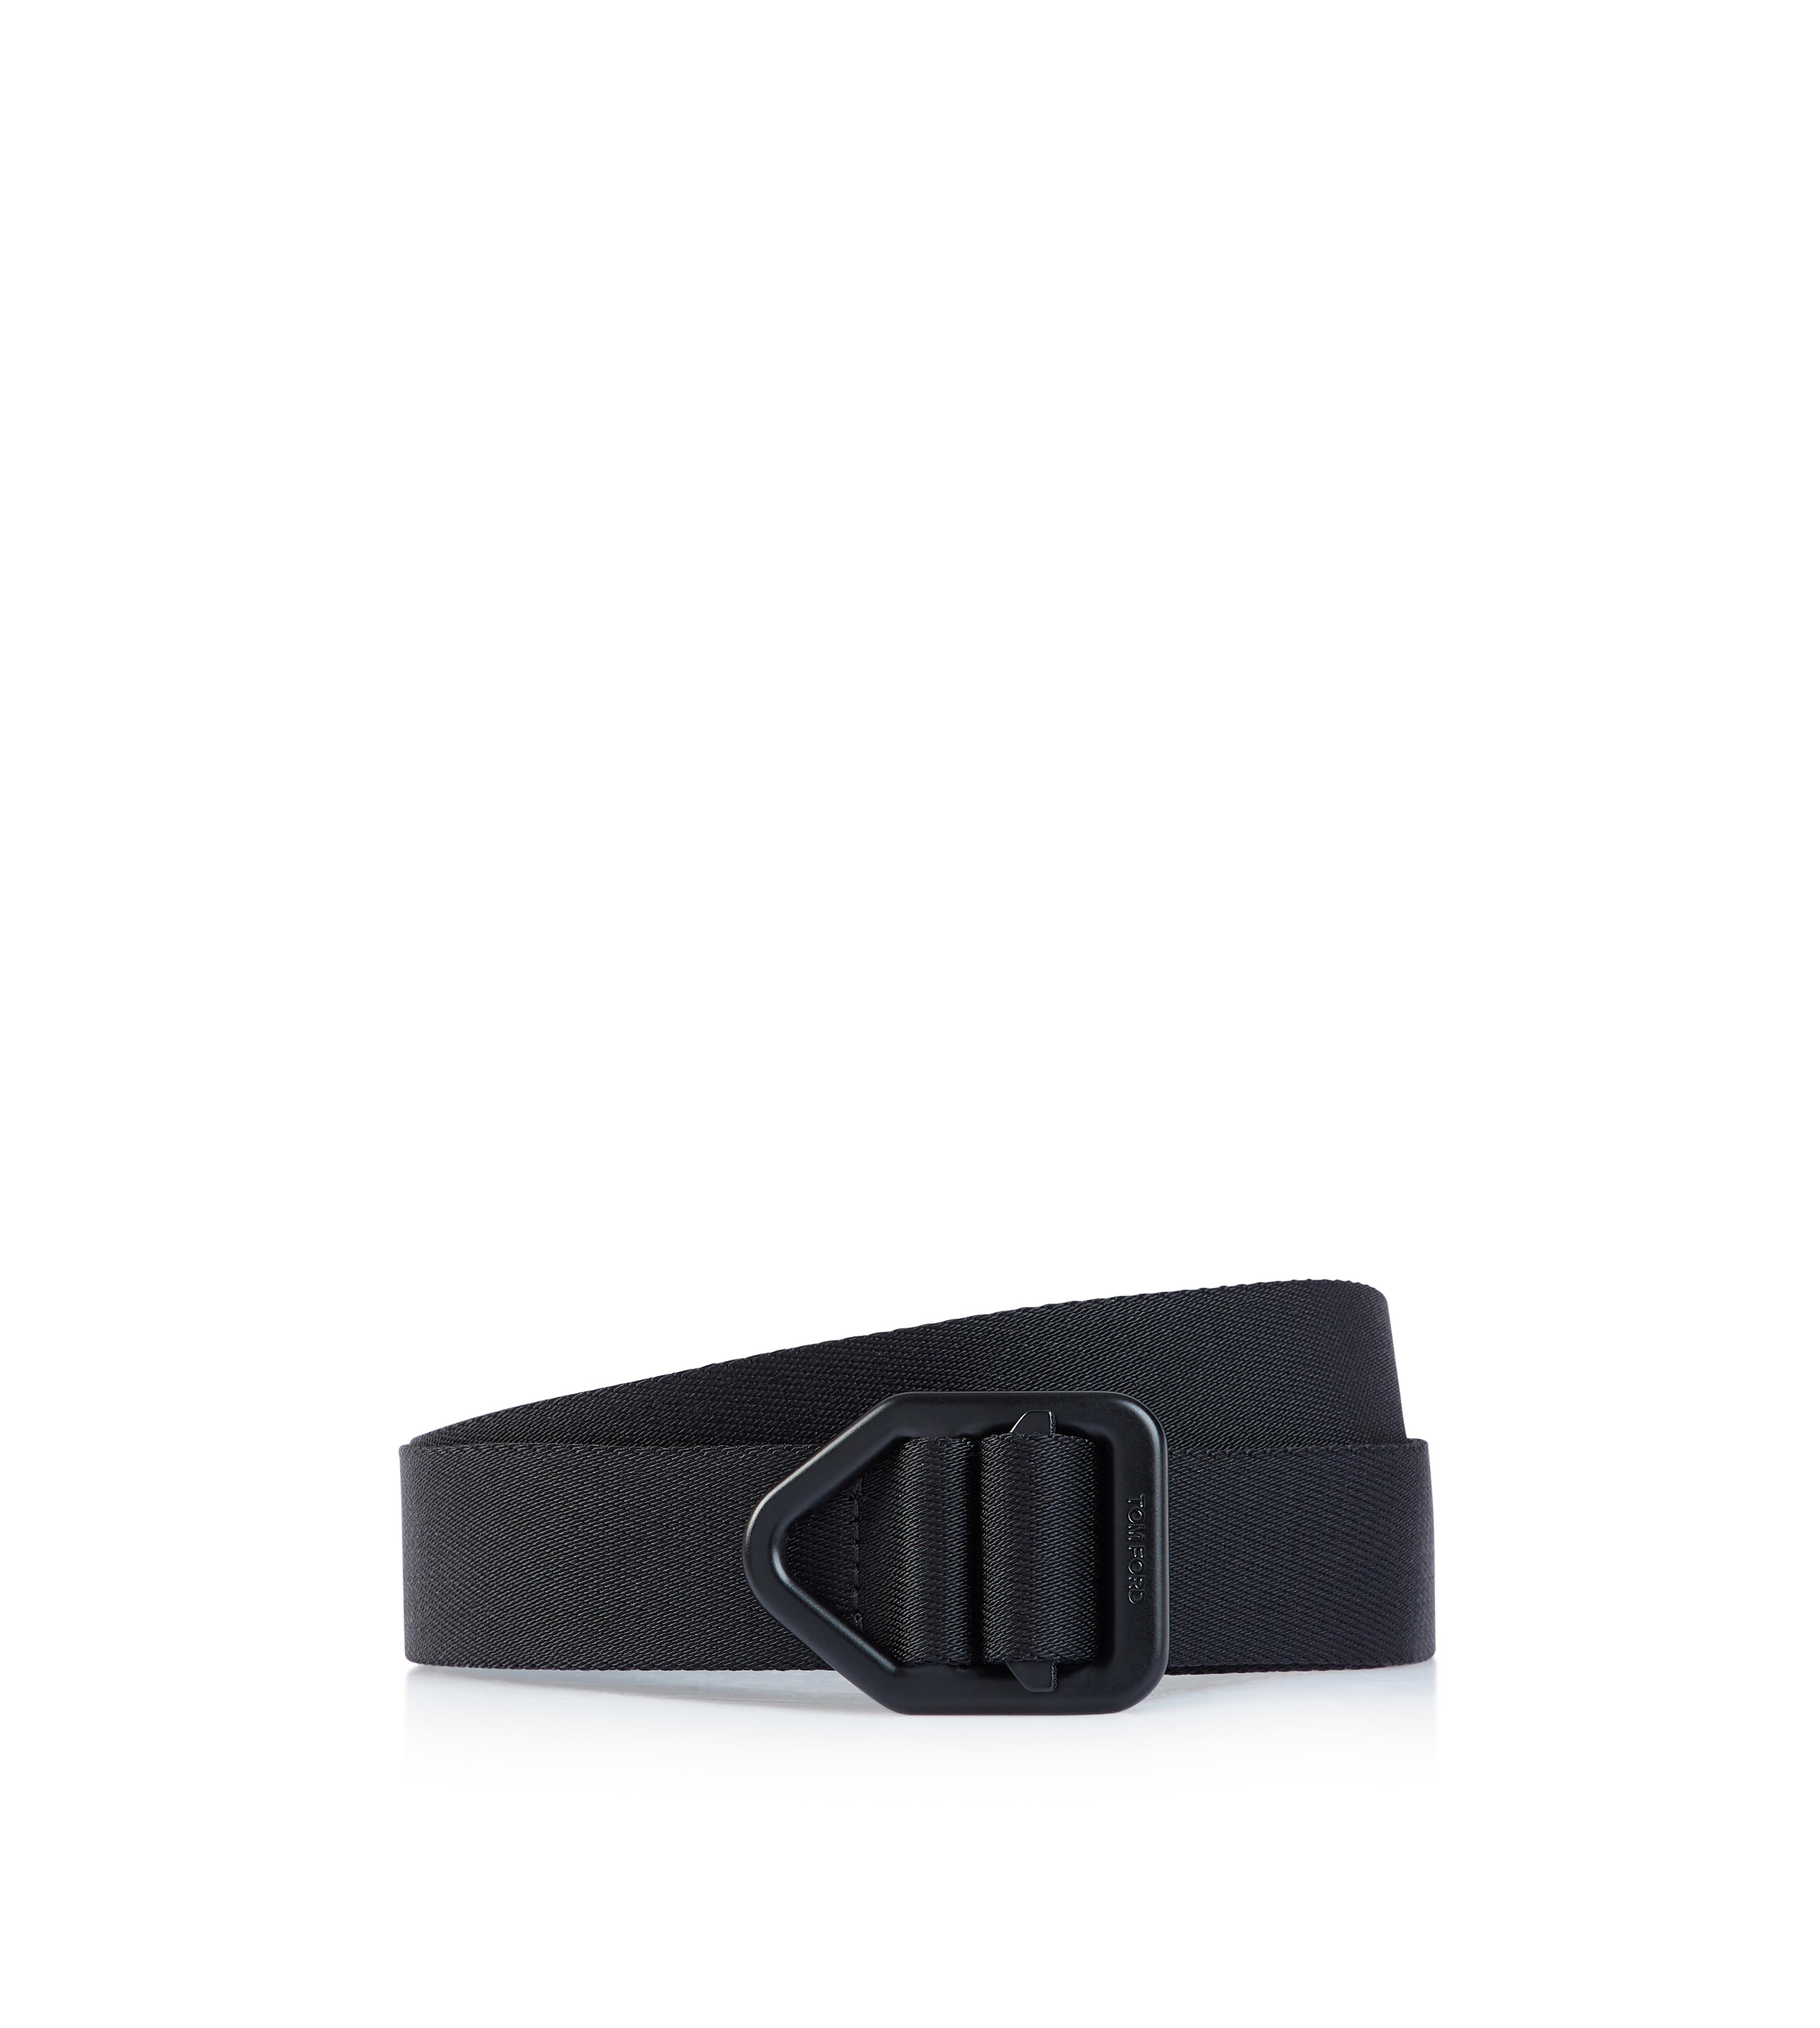 Belts - Men's Accessories | TomFord.com